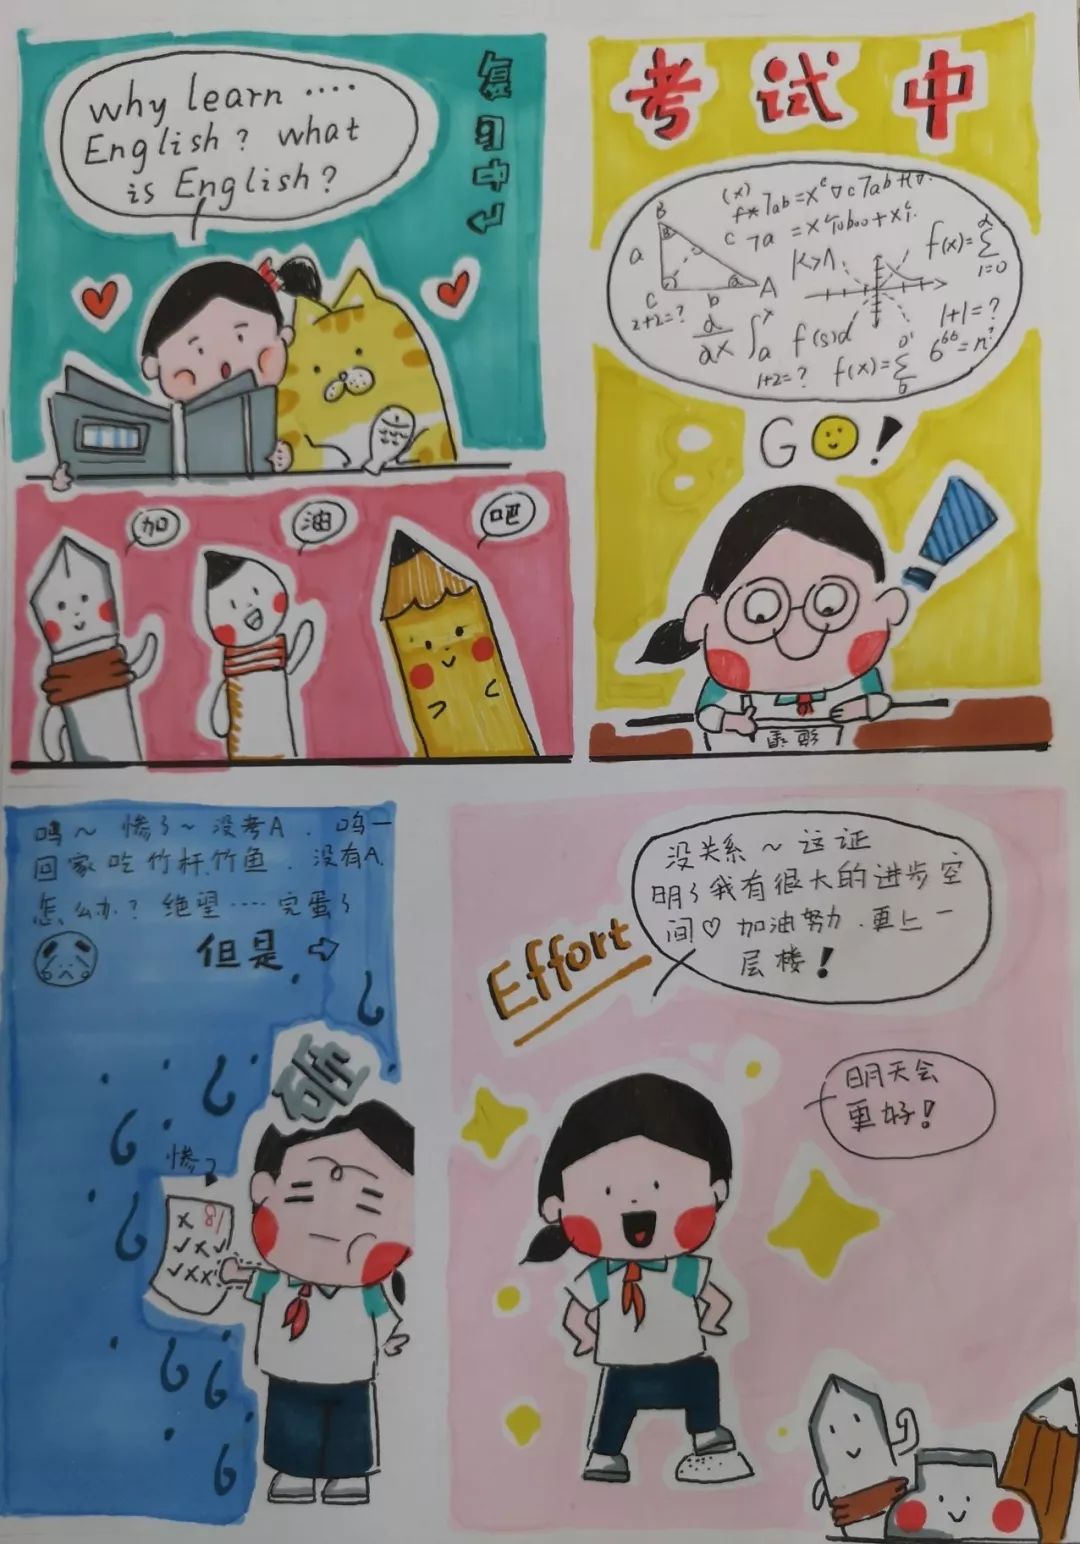 经过精心挑选,报送参与晋江市中小学校园心理漫画评选大赛,初中组的